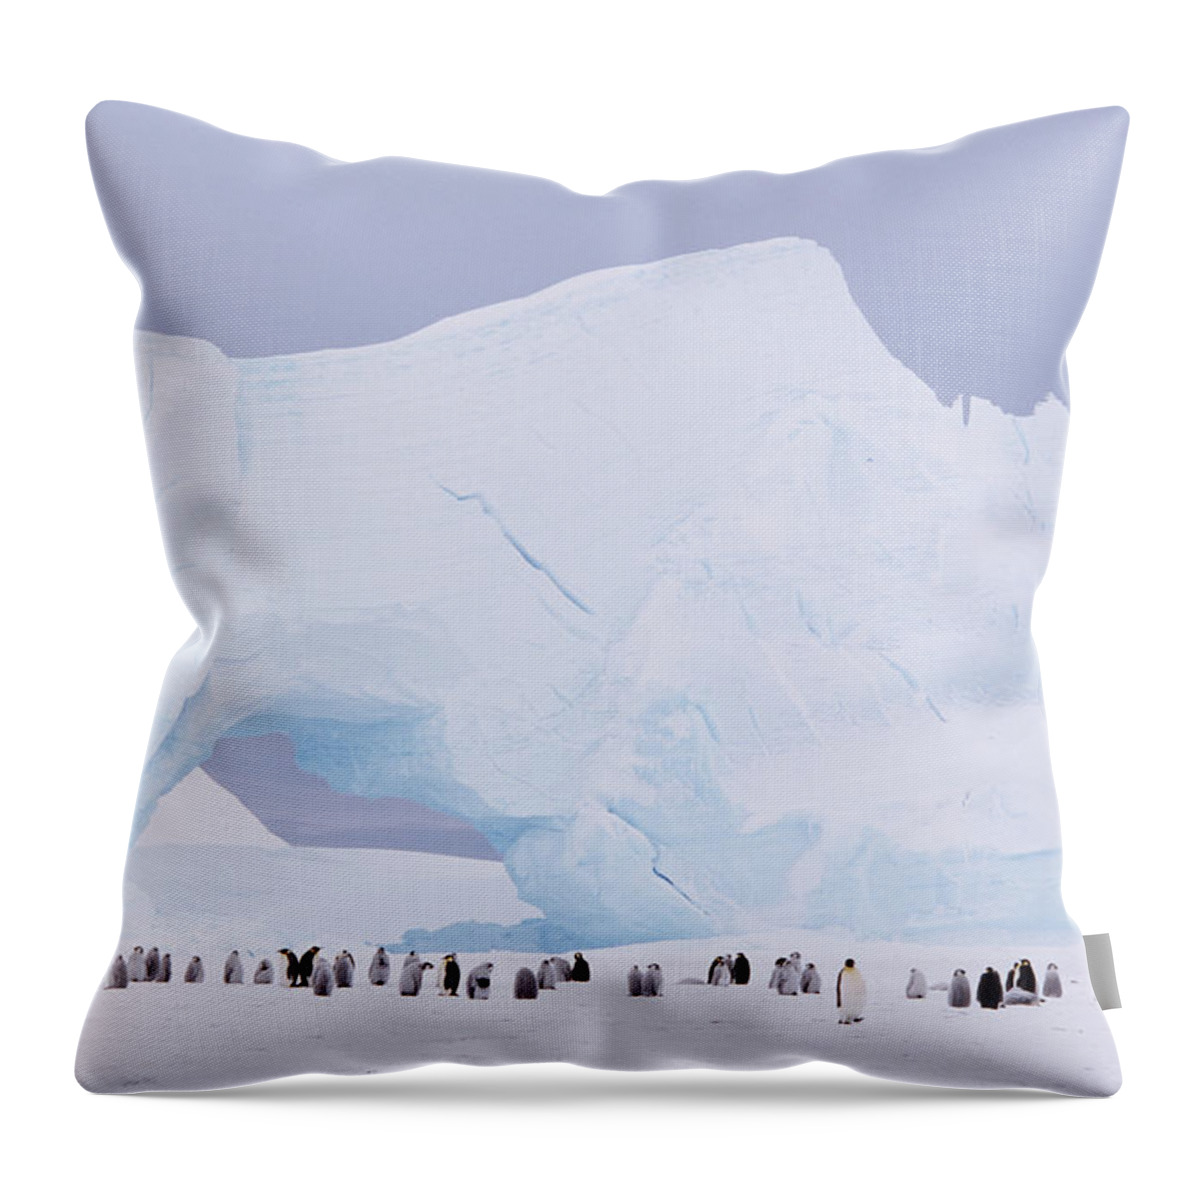 Emperor Penguin Throw Pillow featuring the photograph Antarctica, Emperor Penguin Aptenodytes by Joseph Van Os